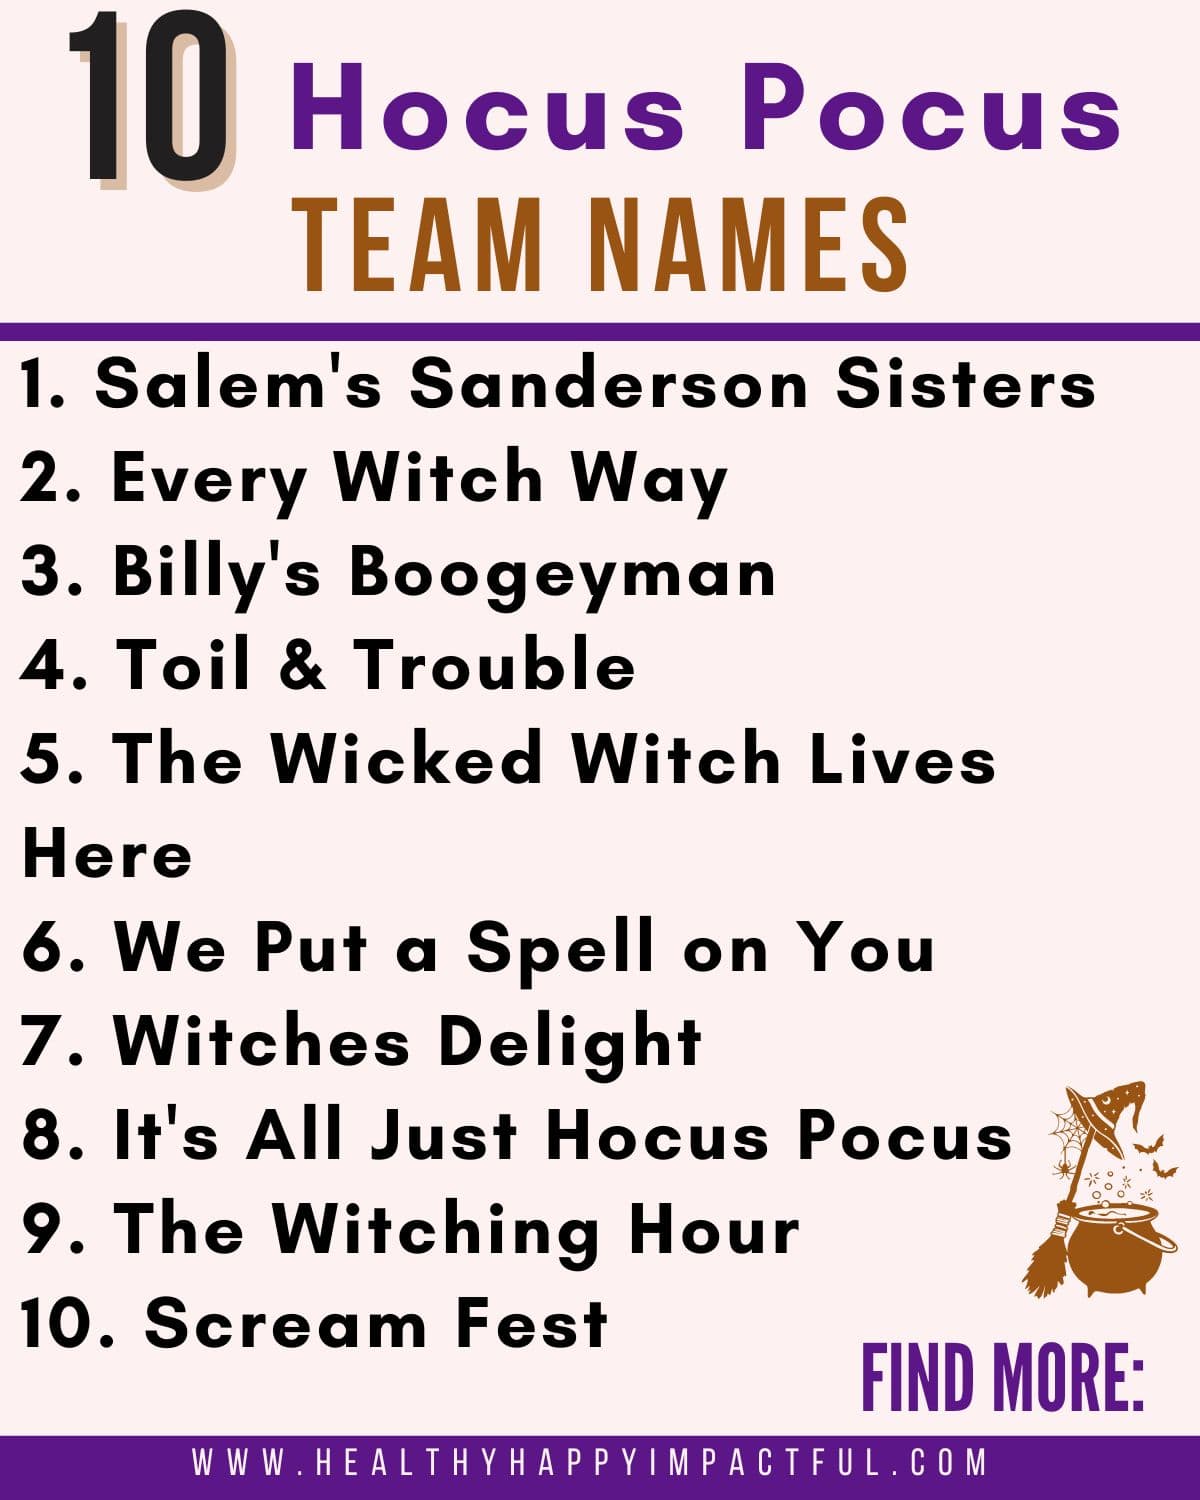 Hocus Pocus trivia team names